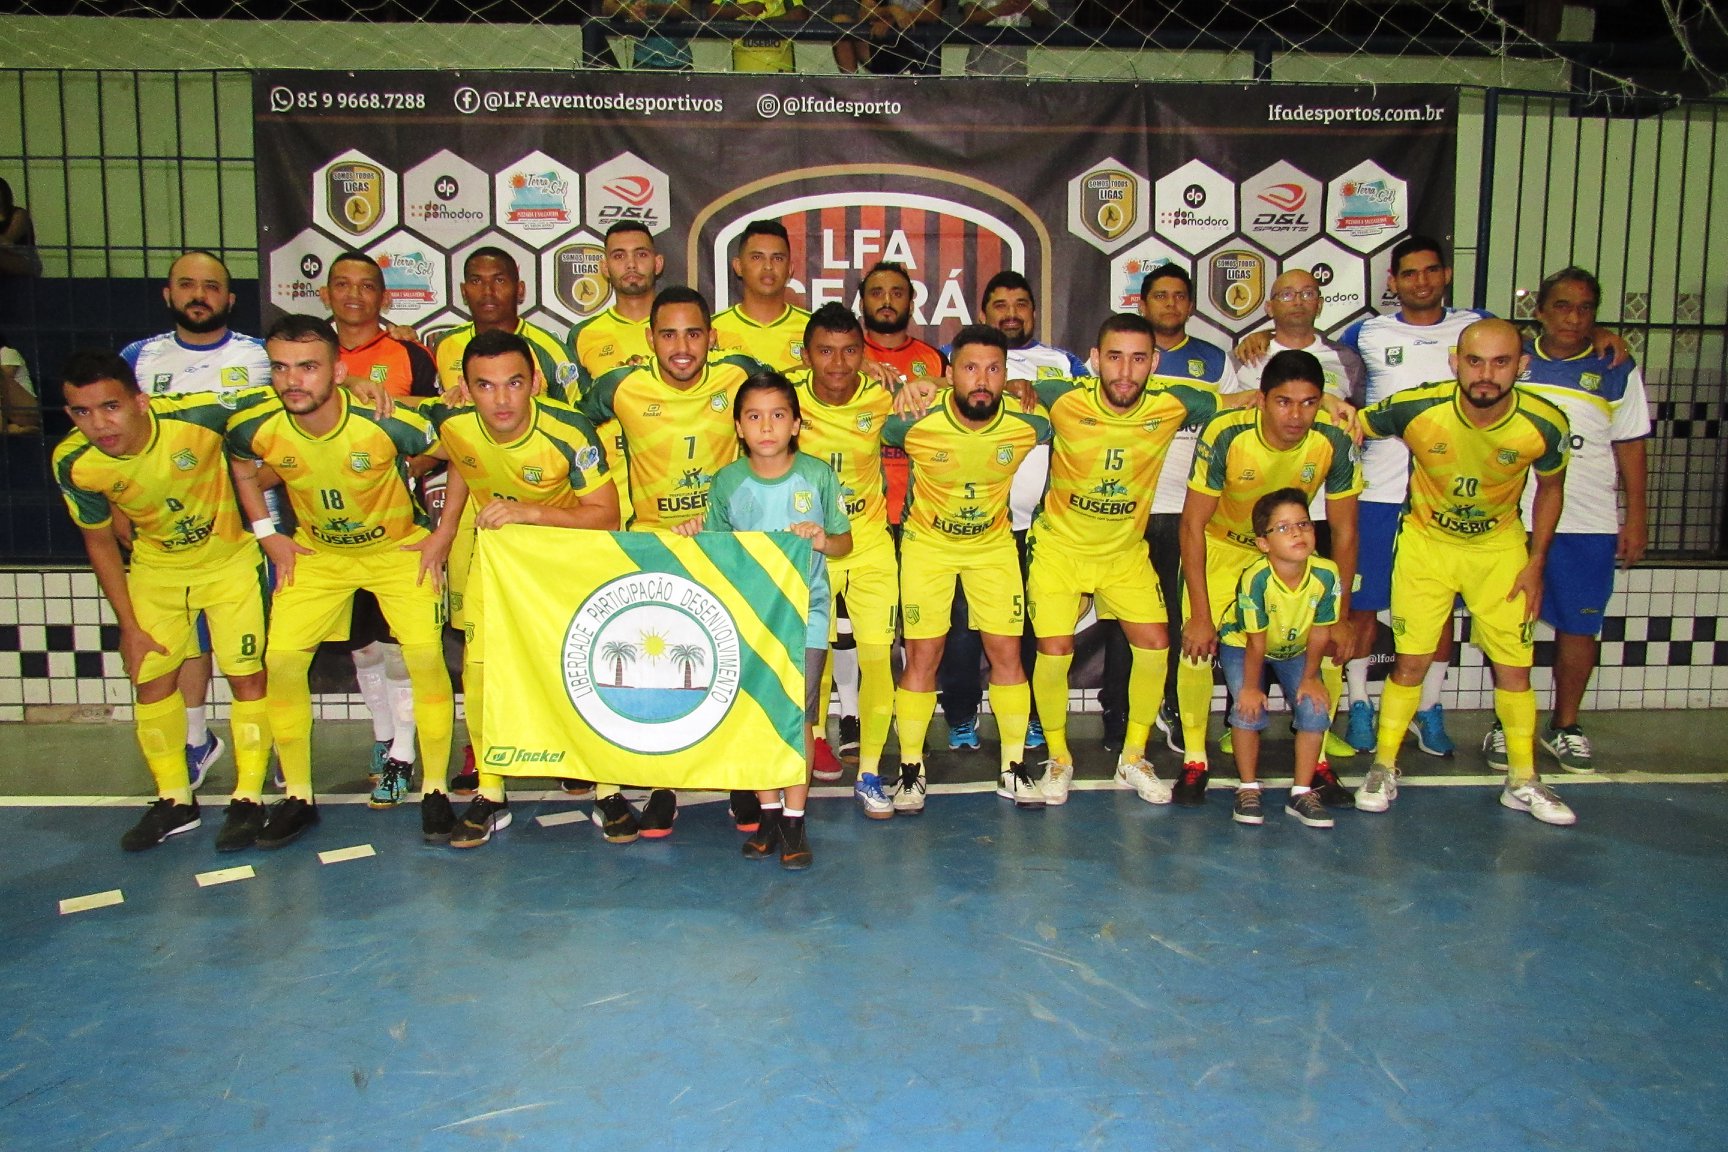 Sport Club Eusébio bate Pague Menos por 4 a 3 e está a um empate para ser campeão da Taça LFA de Futsal